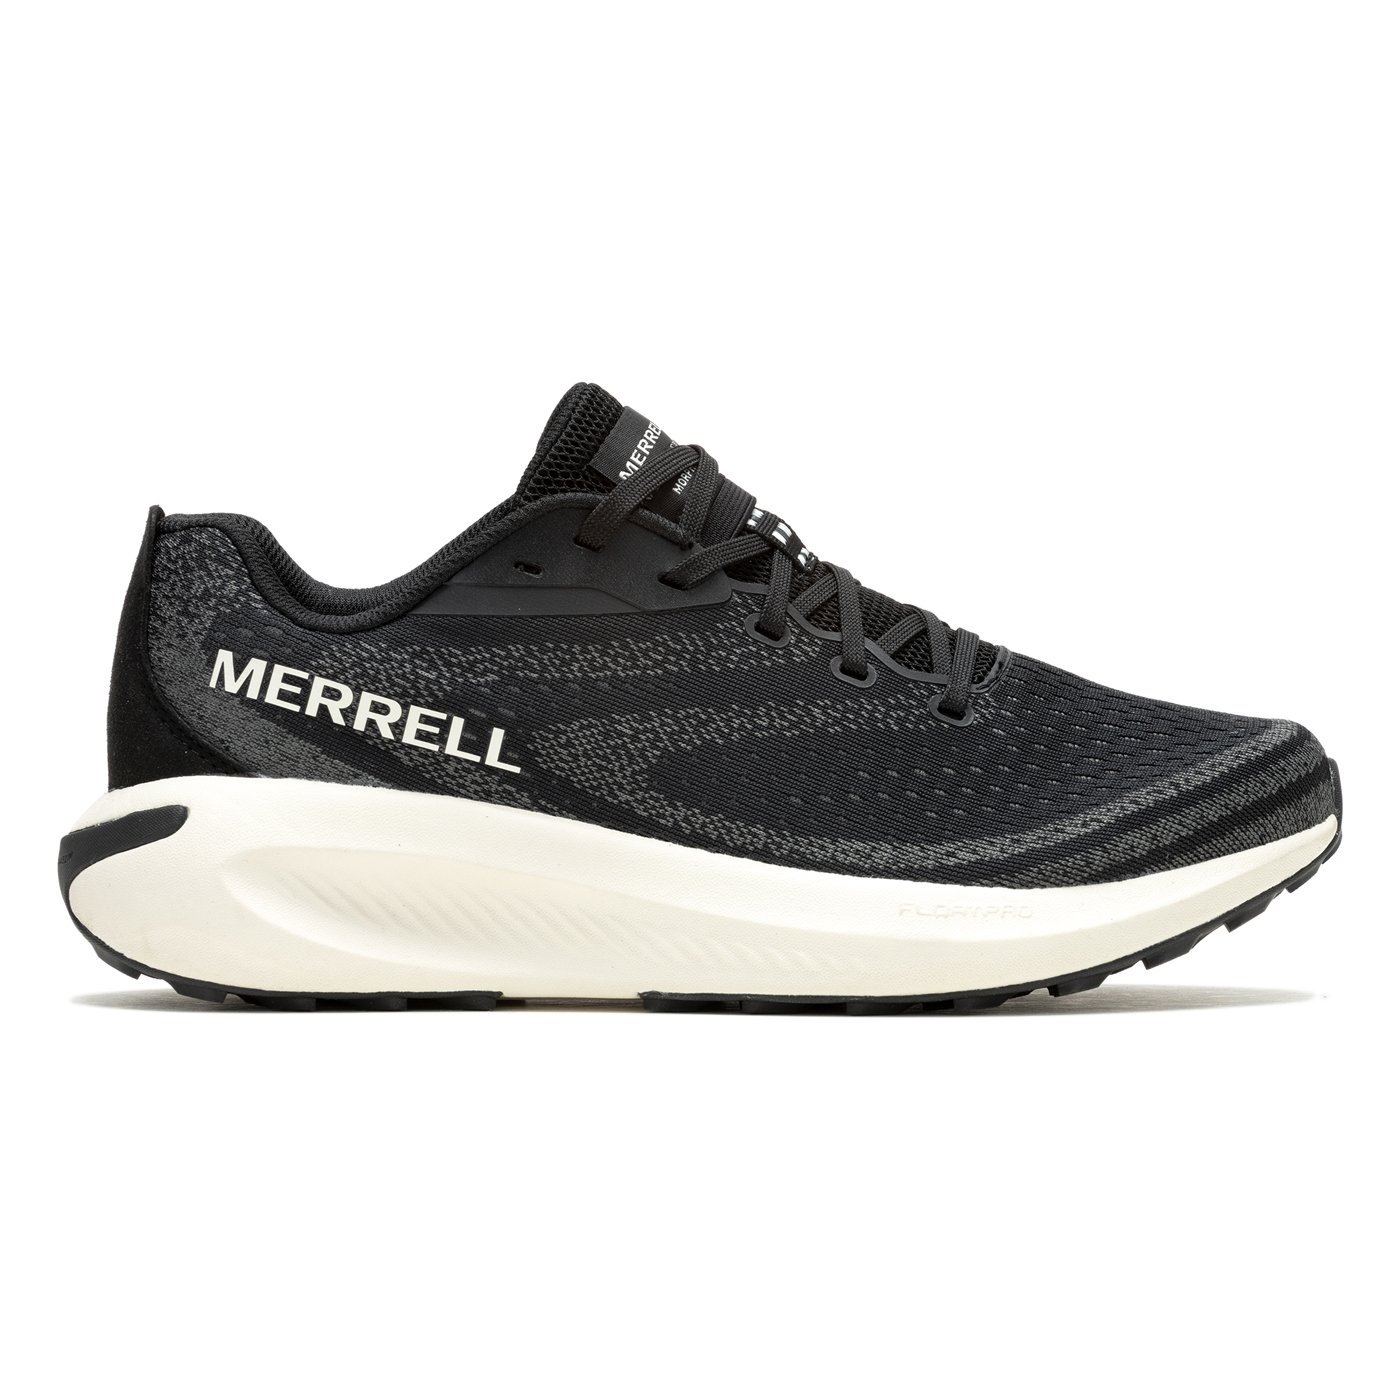 Merrell Morphlite Kadın Patika Koşu Ayakkabısı - Siyah - 1